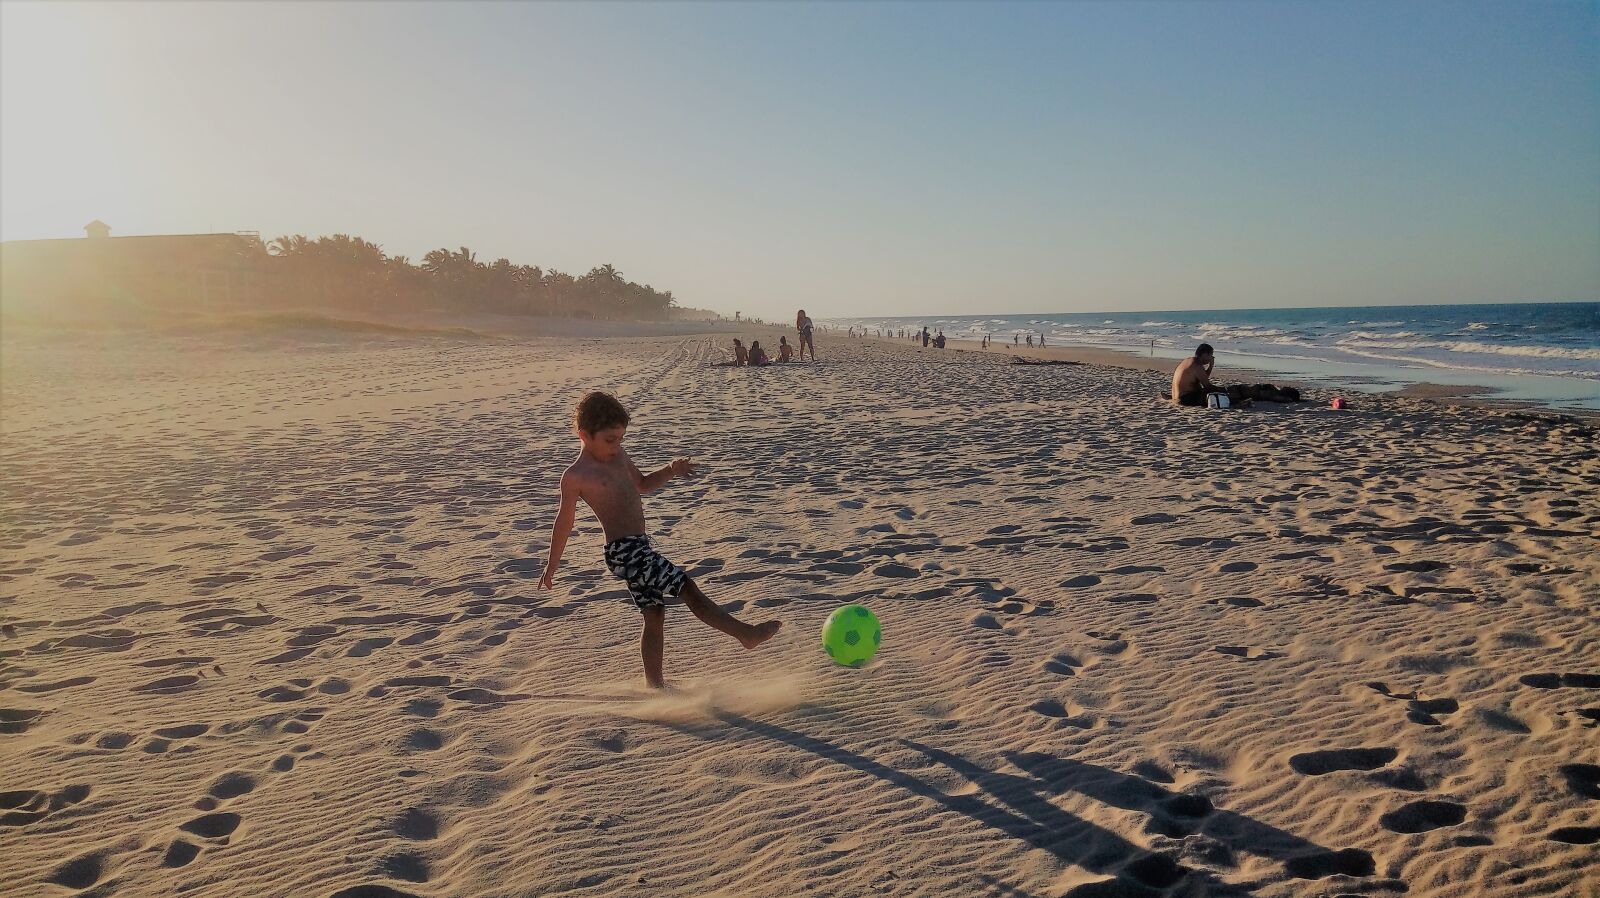 LG X POWER sample photo. Beach, football, mar photography